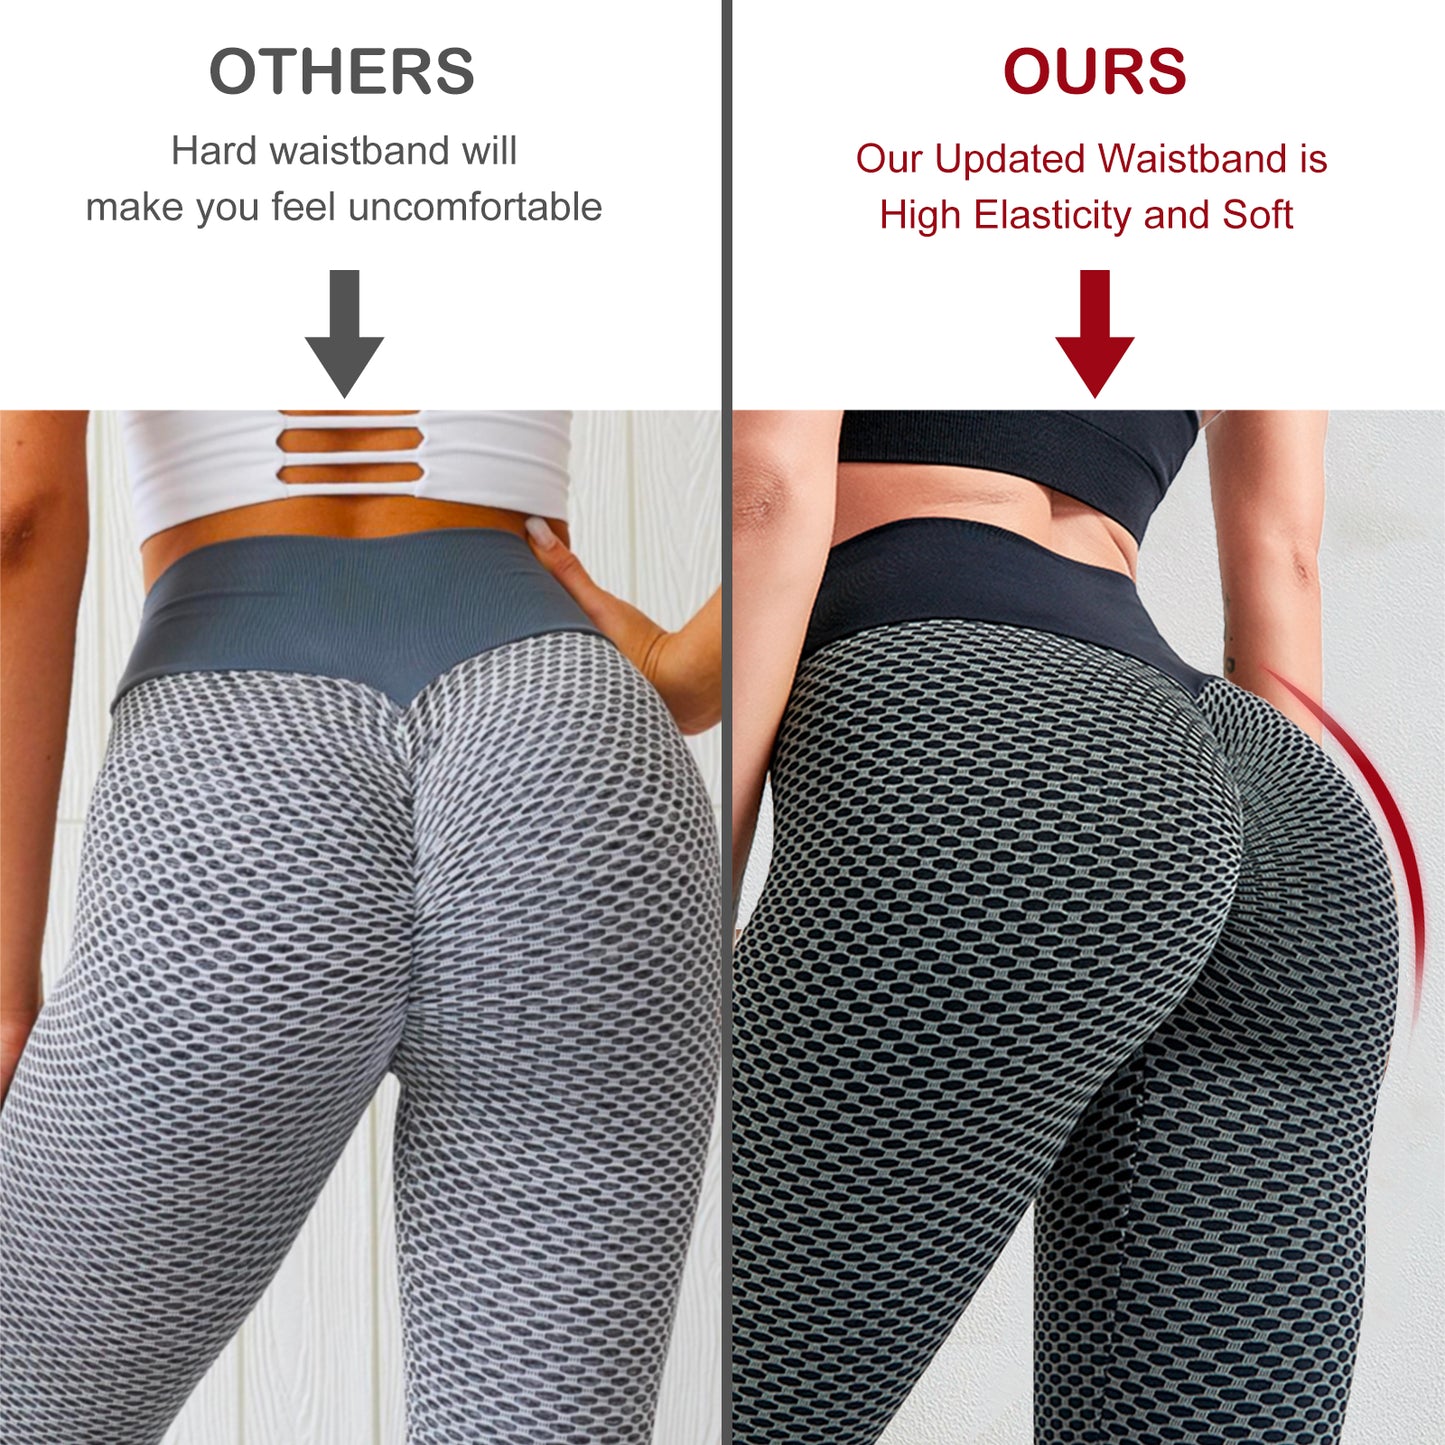 LiftCurve Leggings High Waist- Women Butt Lifting Workout Tights